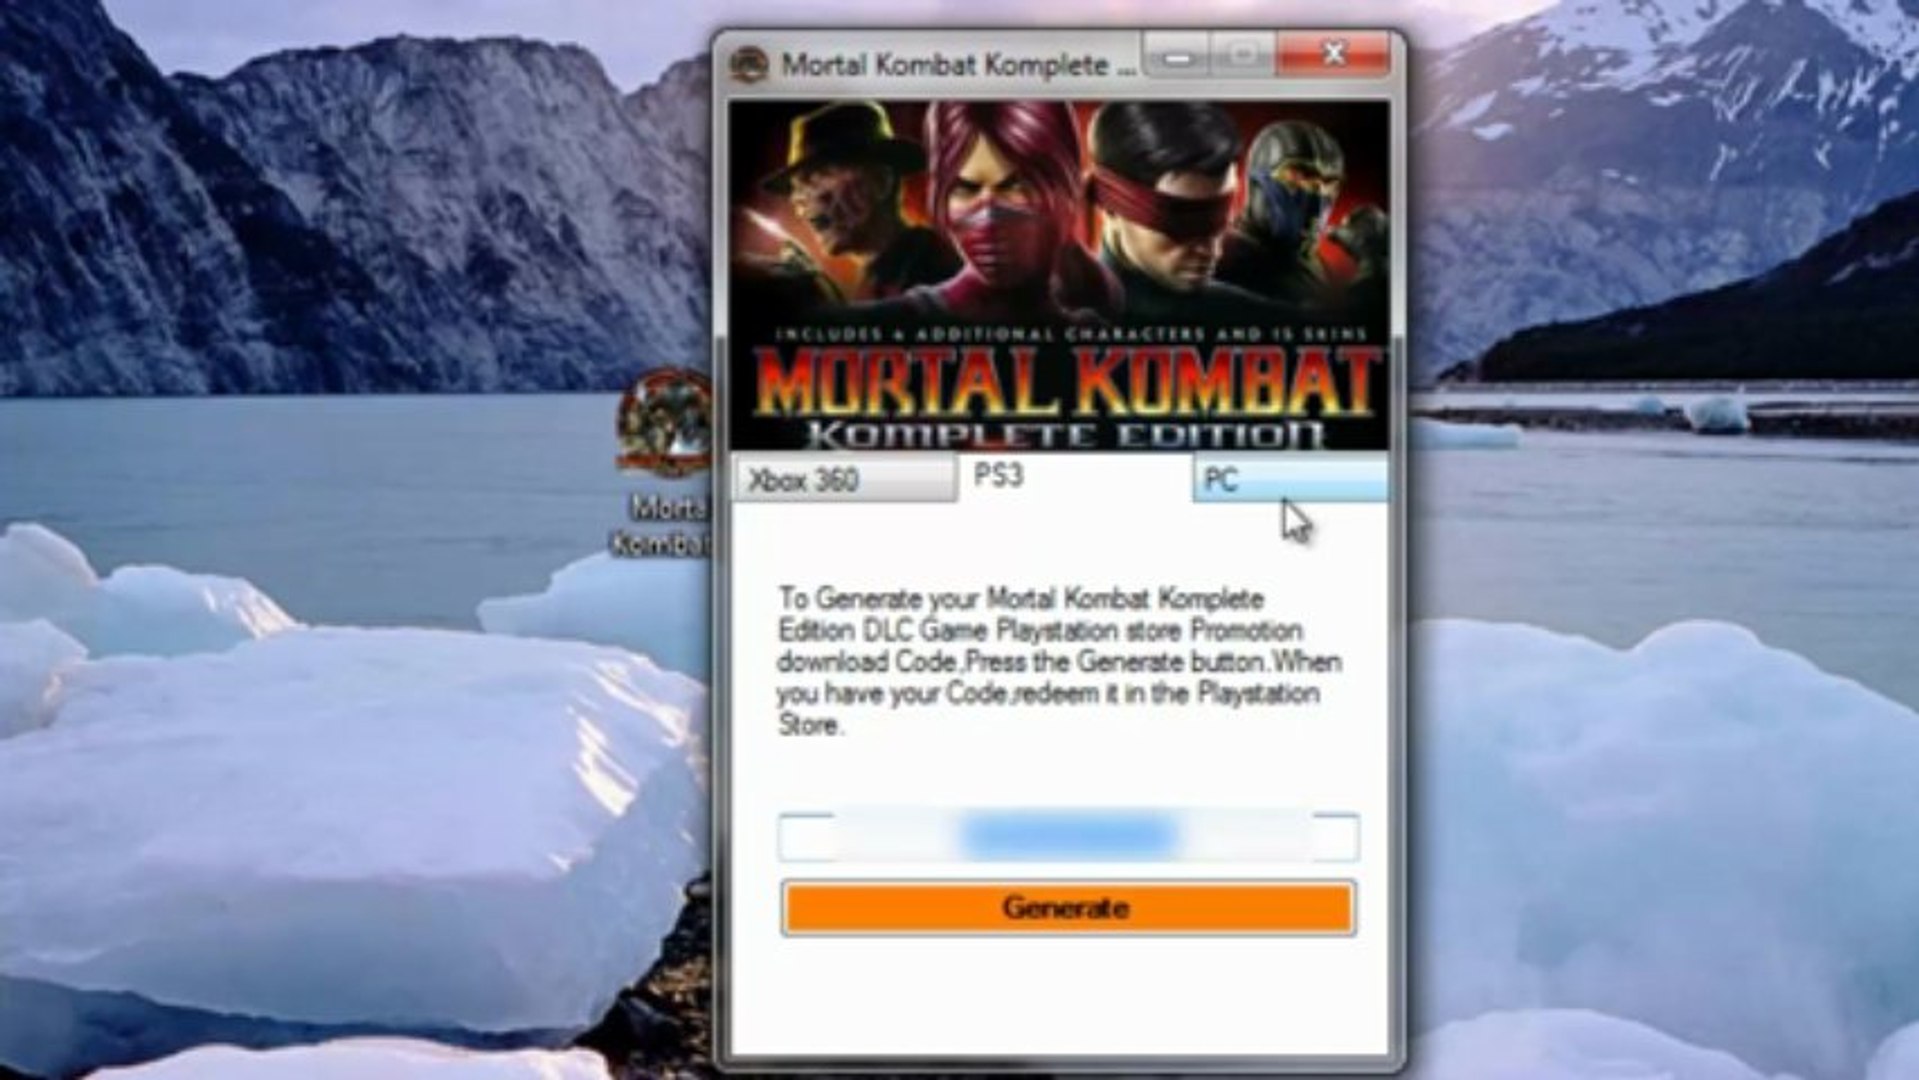 Mortal Kombat Komplete Edition Keygen 2013 v7.5